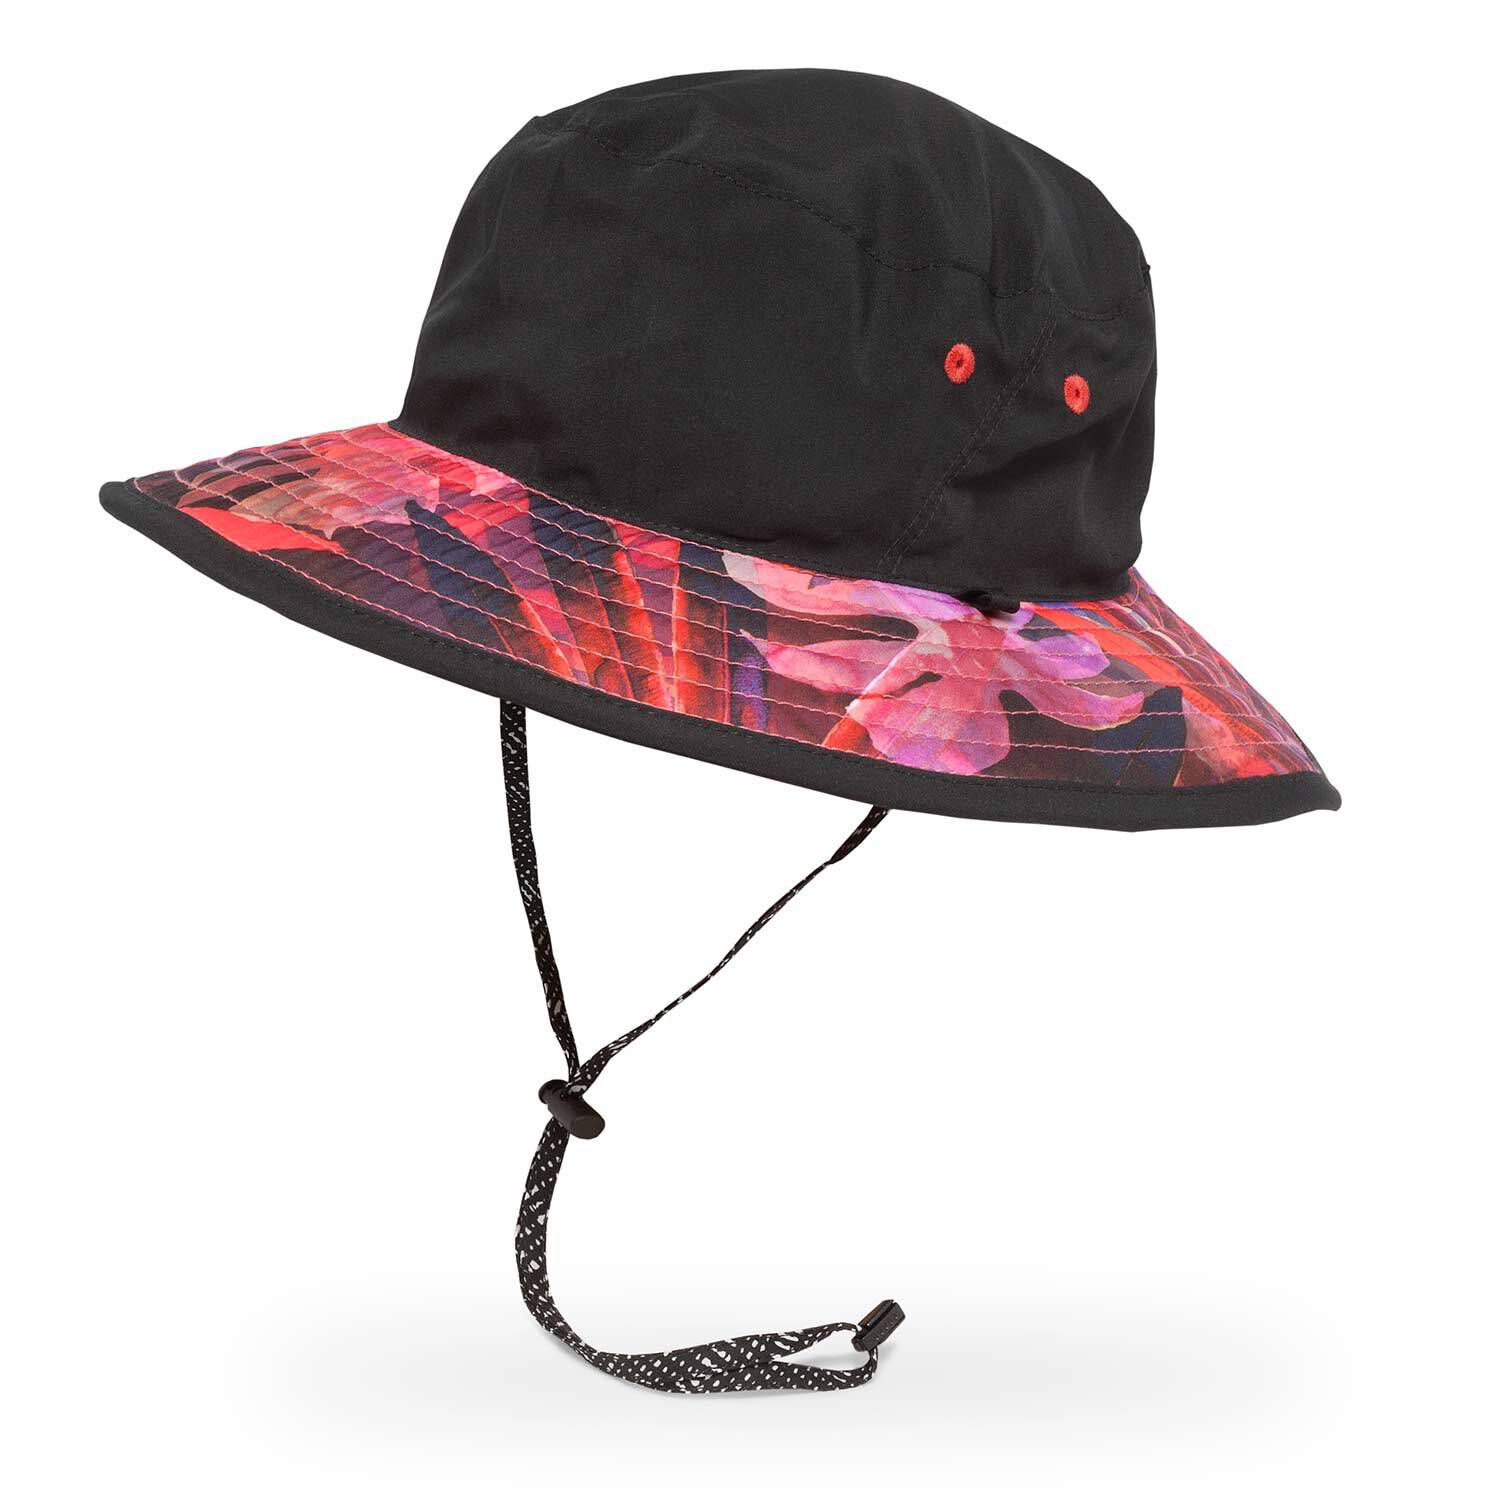 ECOMBOS Women Bucket Hats Cotton Bucket Hat Summer Fisherman Hat Sun Hat Beach Hat for Women Men Teens 